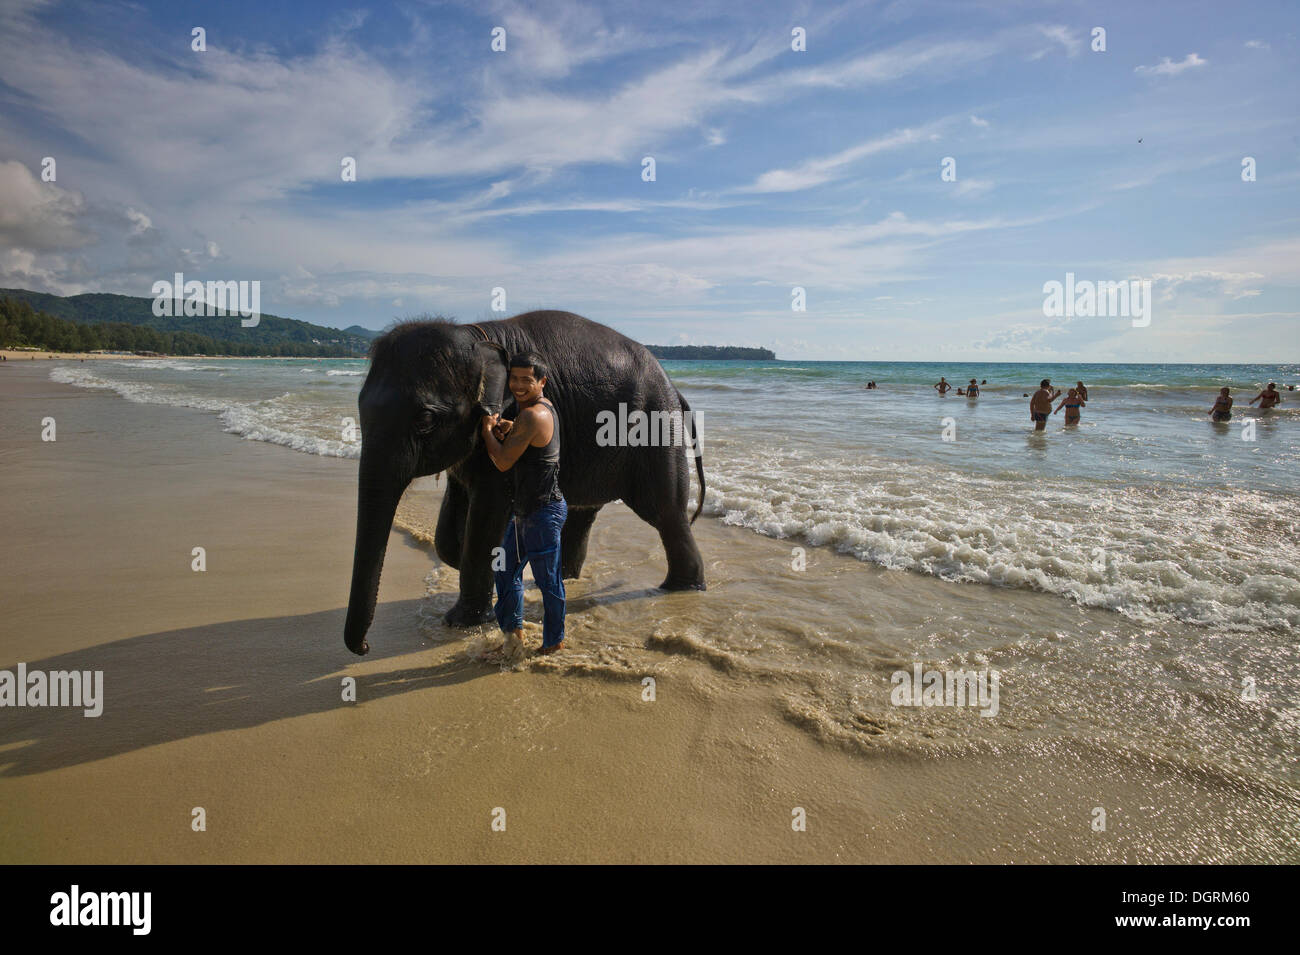 Addomesticazione elefante Asiatico (Elephas maximus) presso la spiaggia come un attrazione turistica, Phuket, Thailandia, Asia PublicGround Foto Stock